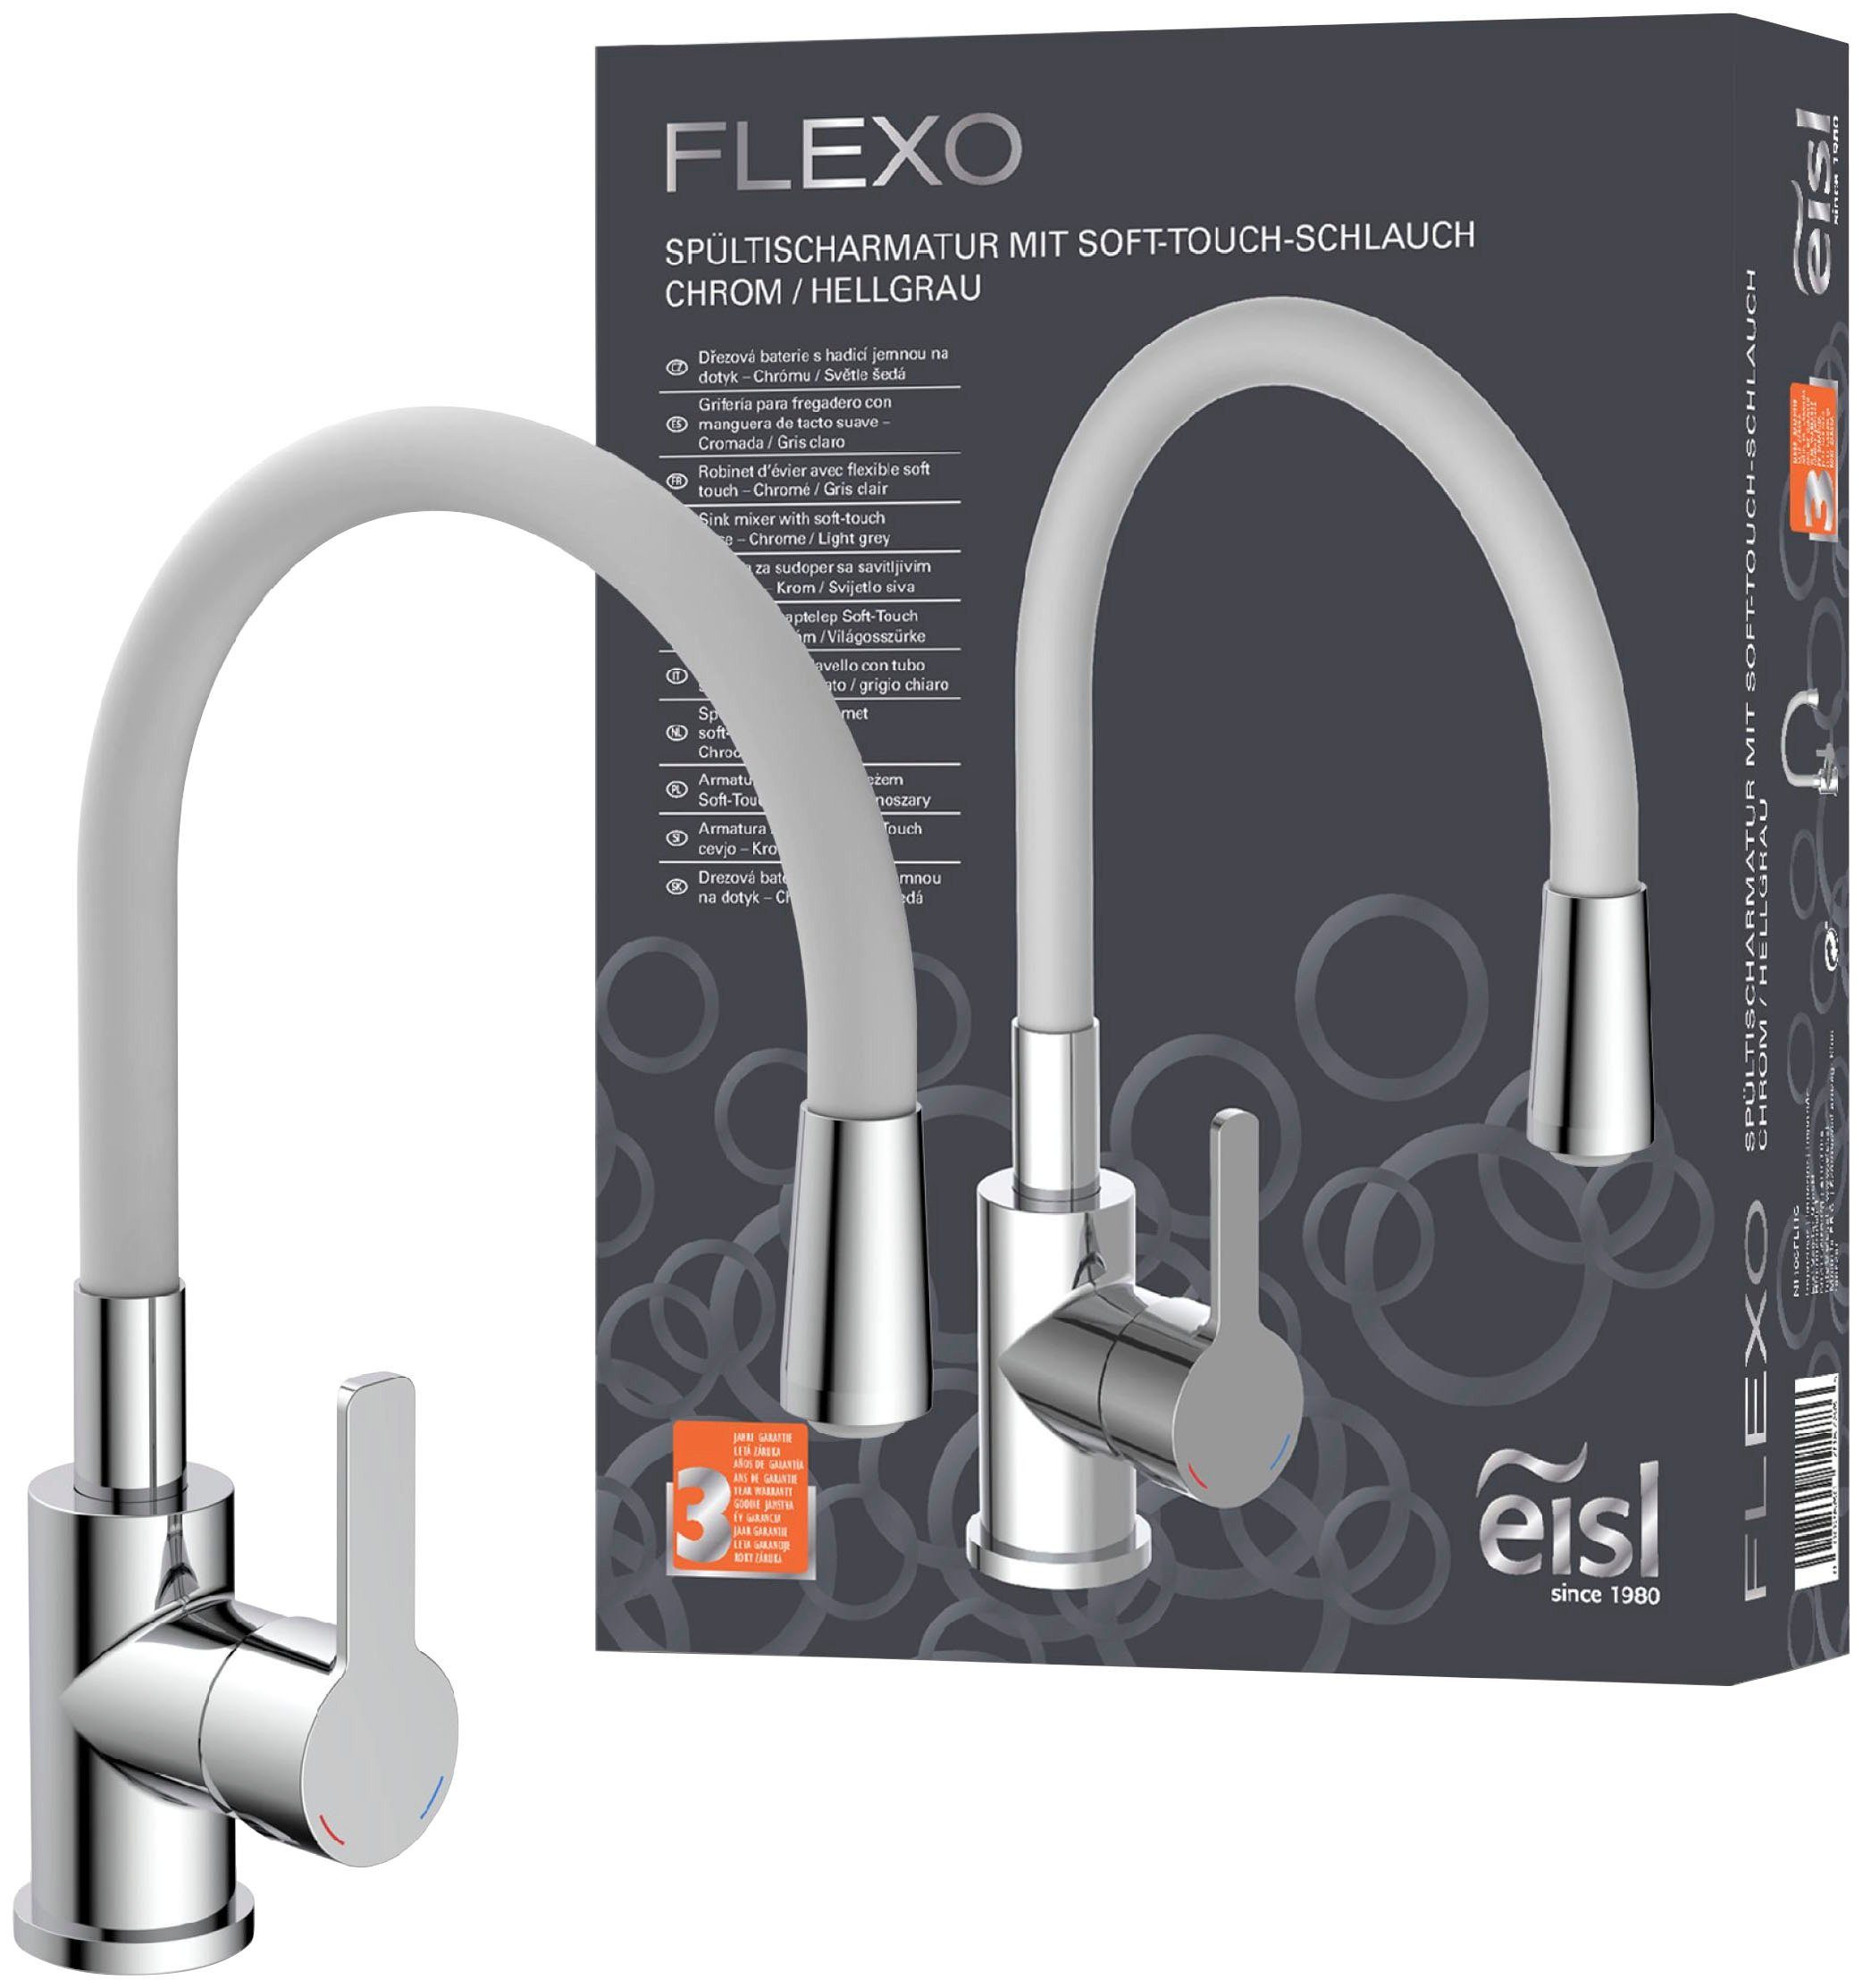 Eisl Spültischarmatur Flexo energiesparender Cold-Start, wassersparender Eco-Click,360° schwenkbar hellgrau/chrom